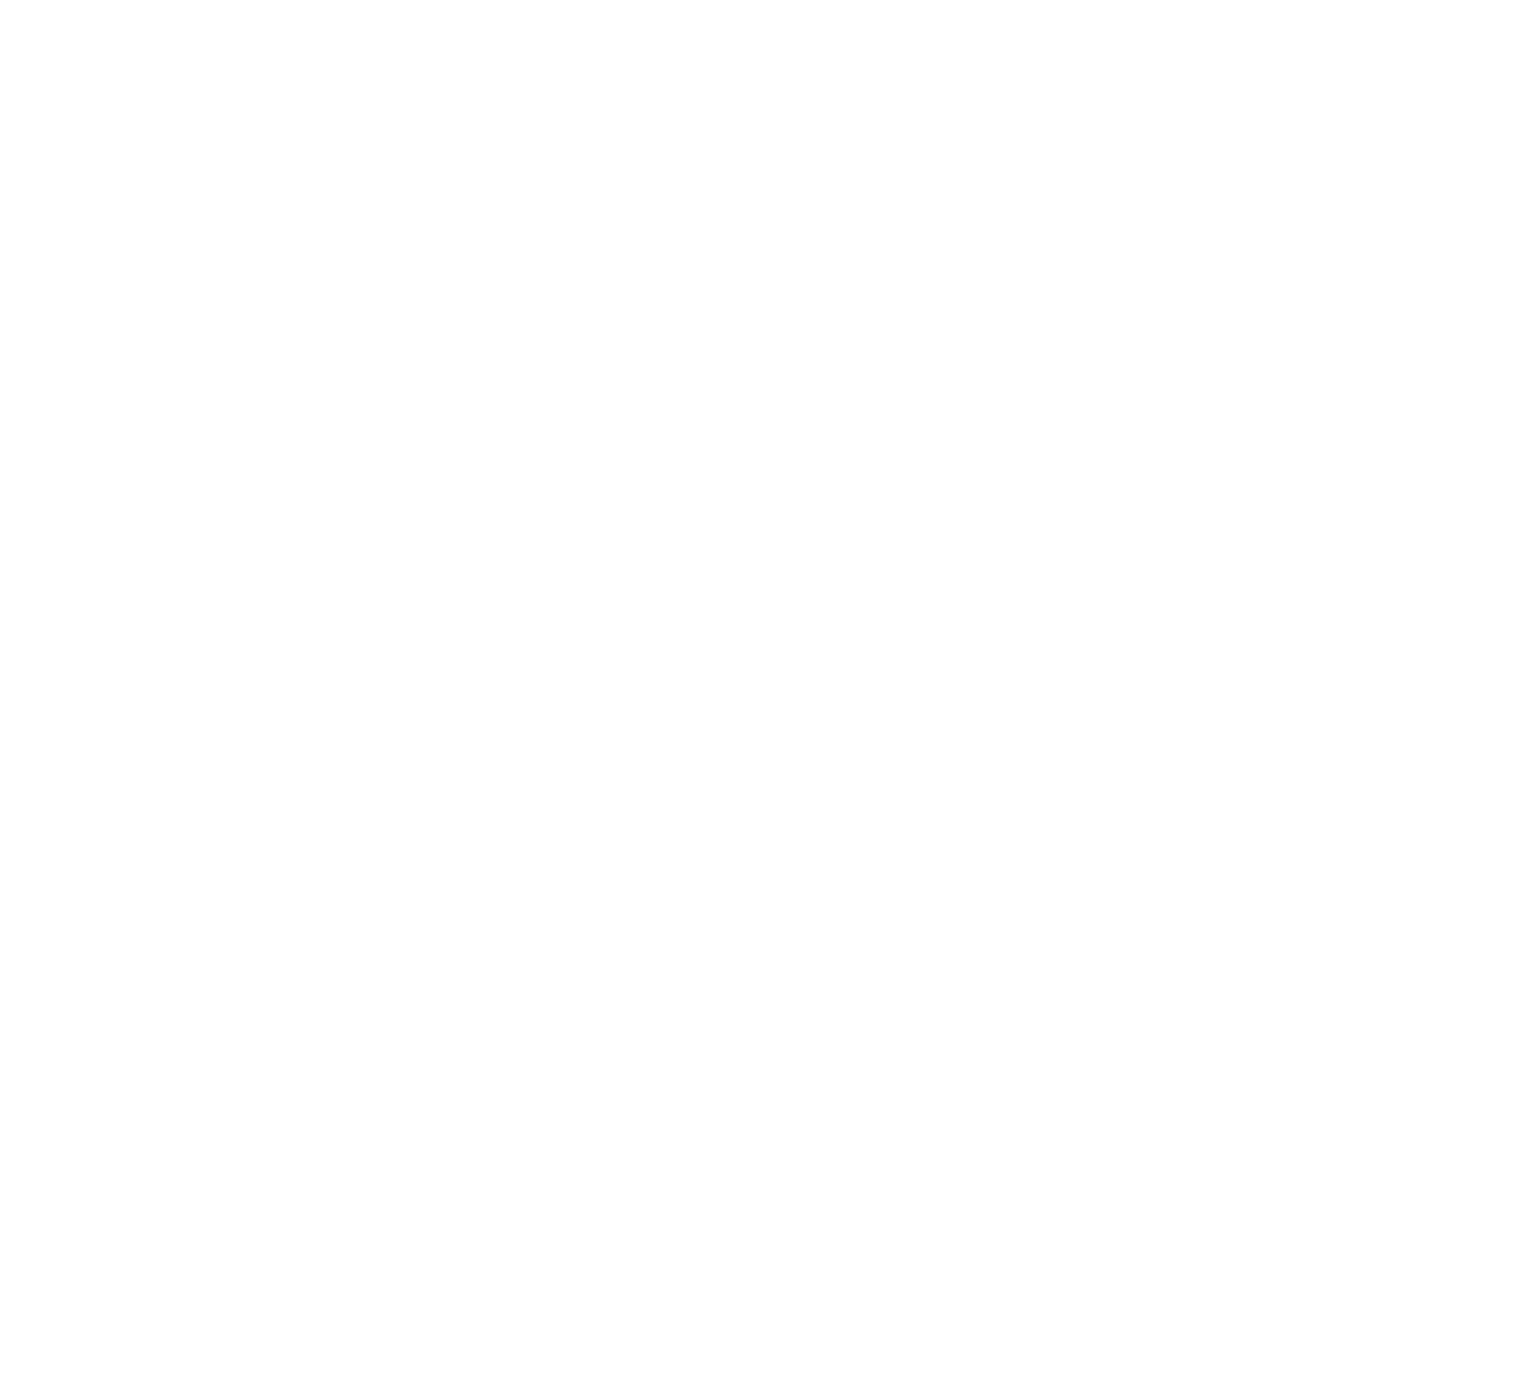 Komatsu logo pour fonds sombres (PNG transparent)